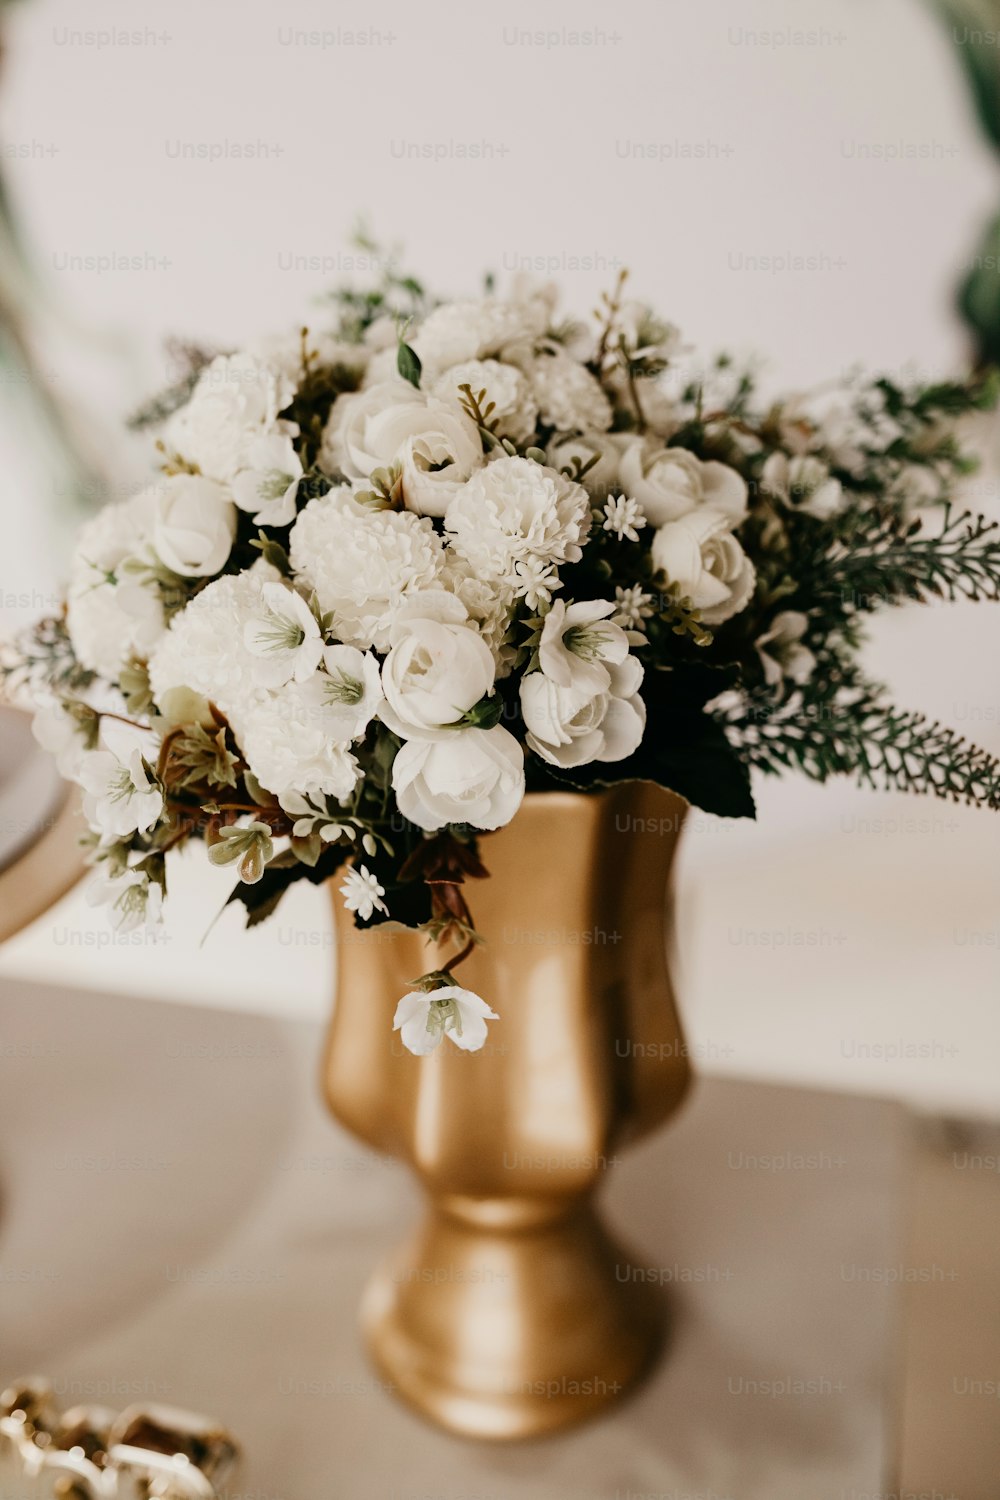 un vase en or rempli de fleurs blanches sur une table